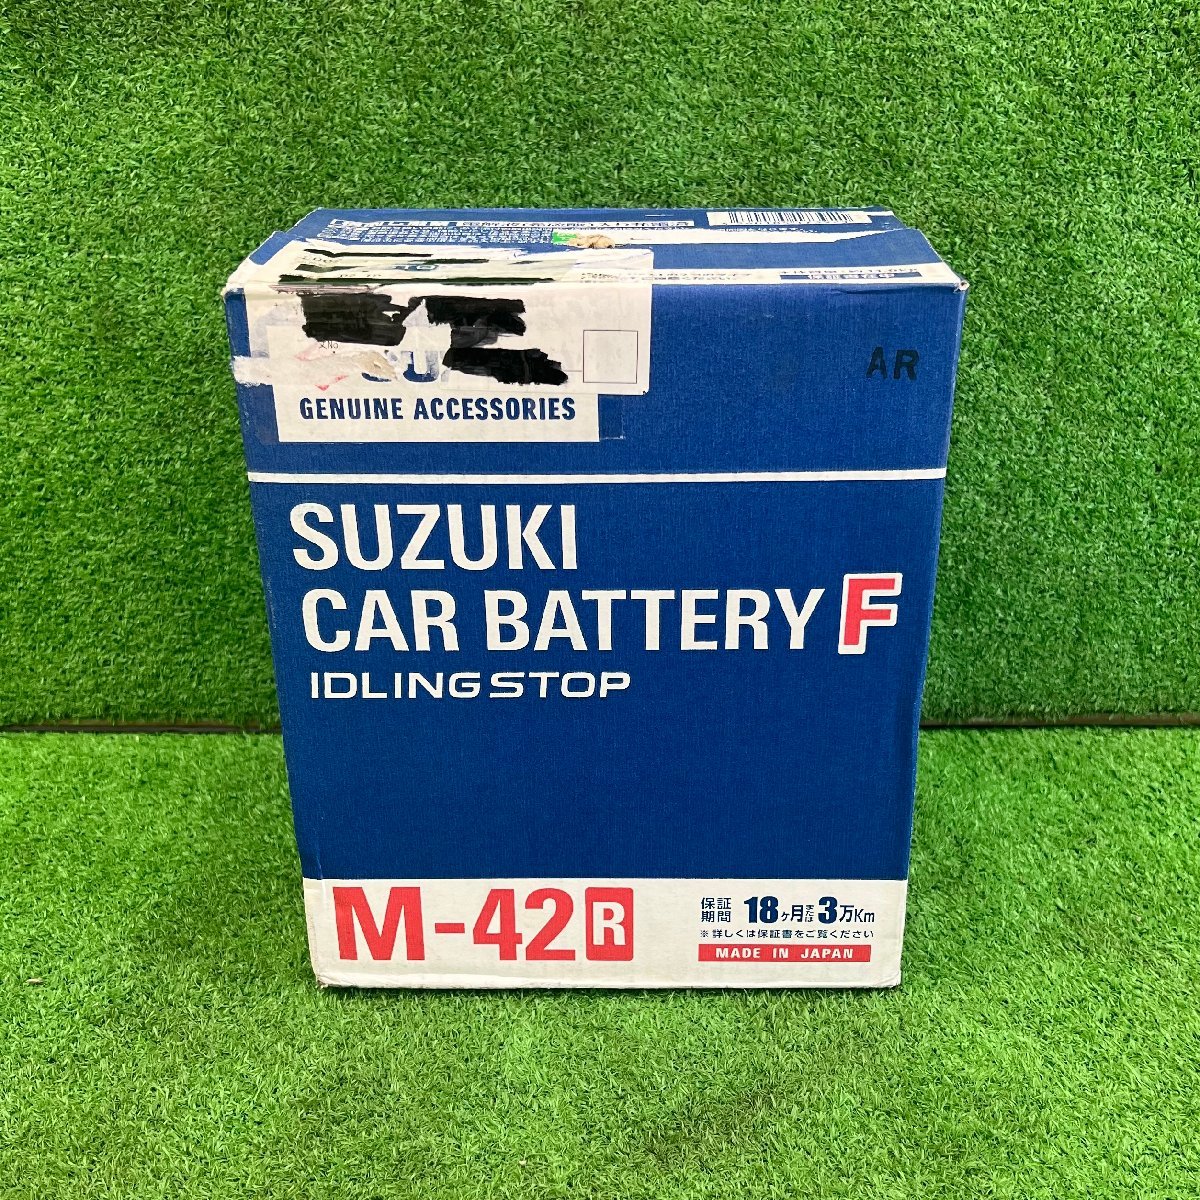 純正 SUZUKI スズキ カーバッテリーF アイドリングストップ車用 M-42R 自動車用バッテリー M42_画像1